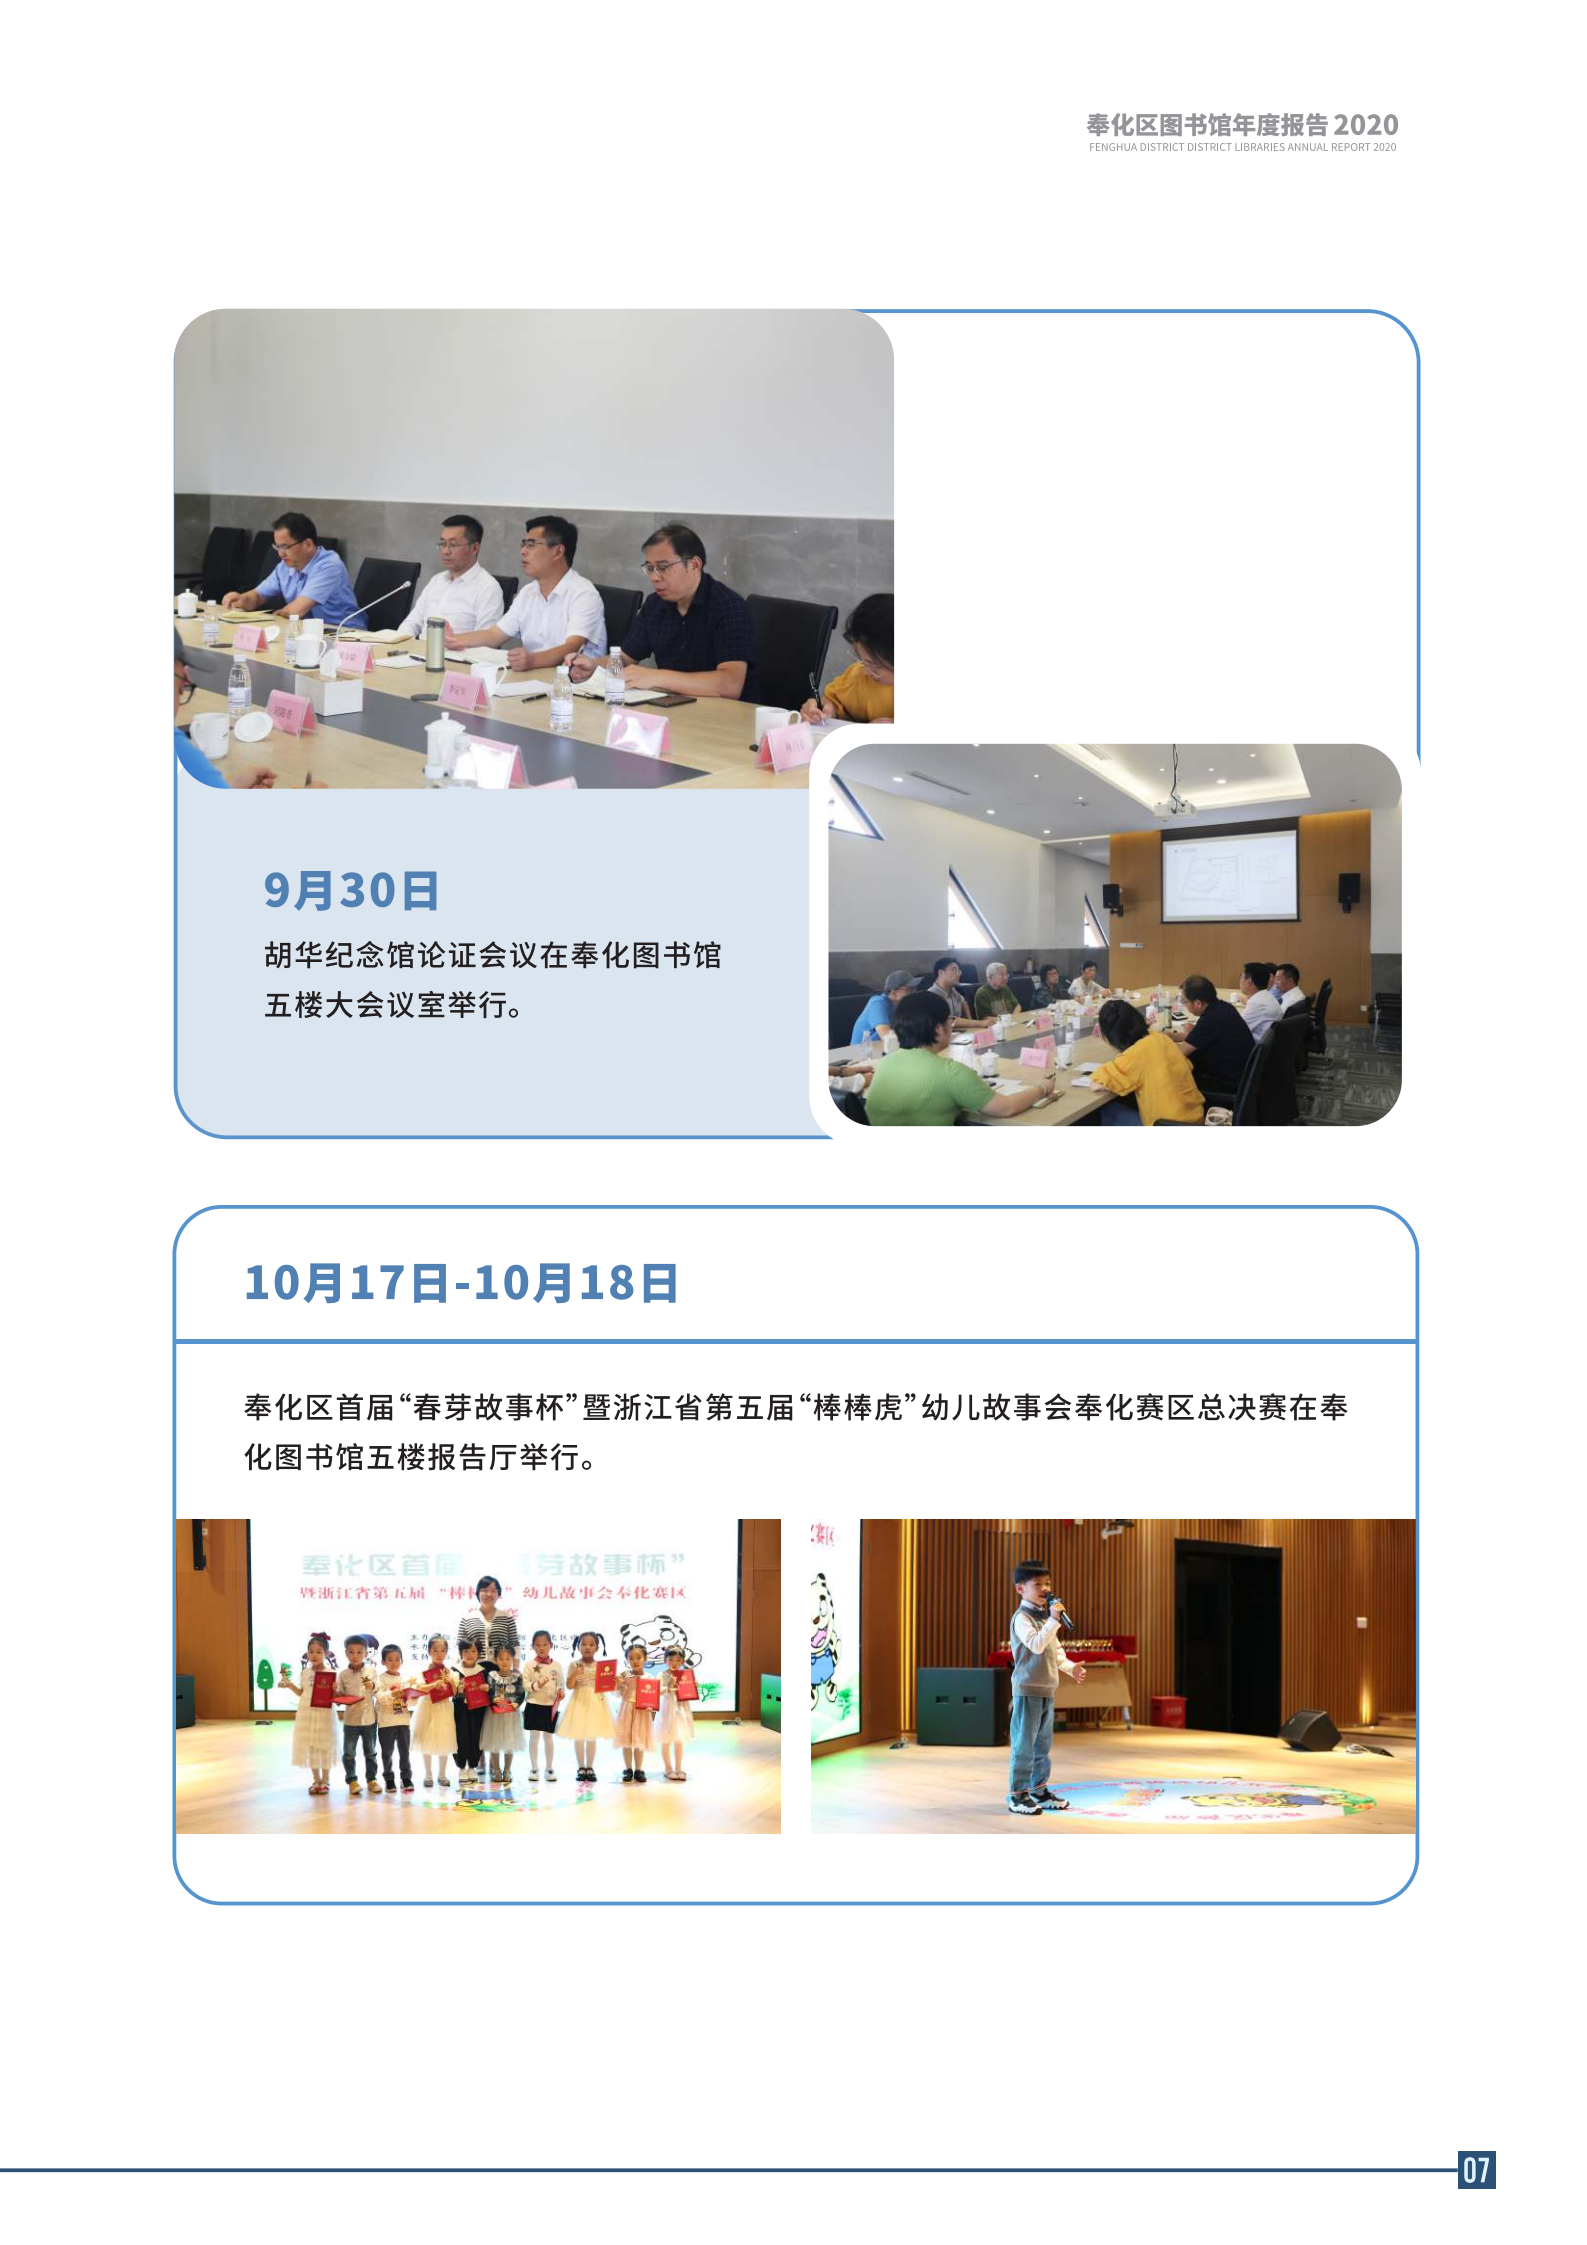 宁波市奉化区图书馆2020年年度报告 终稿_07.png